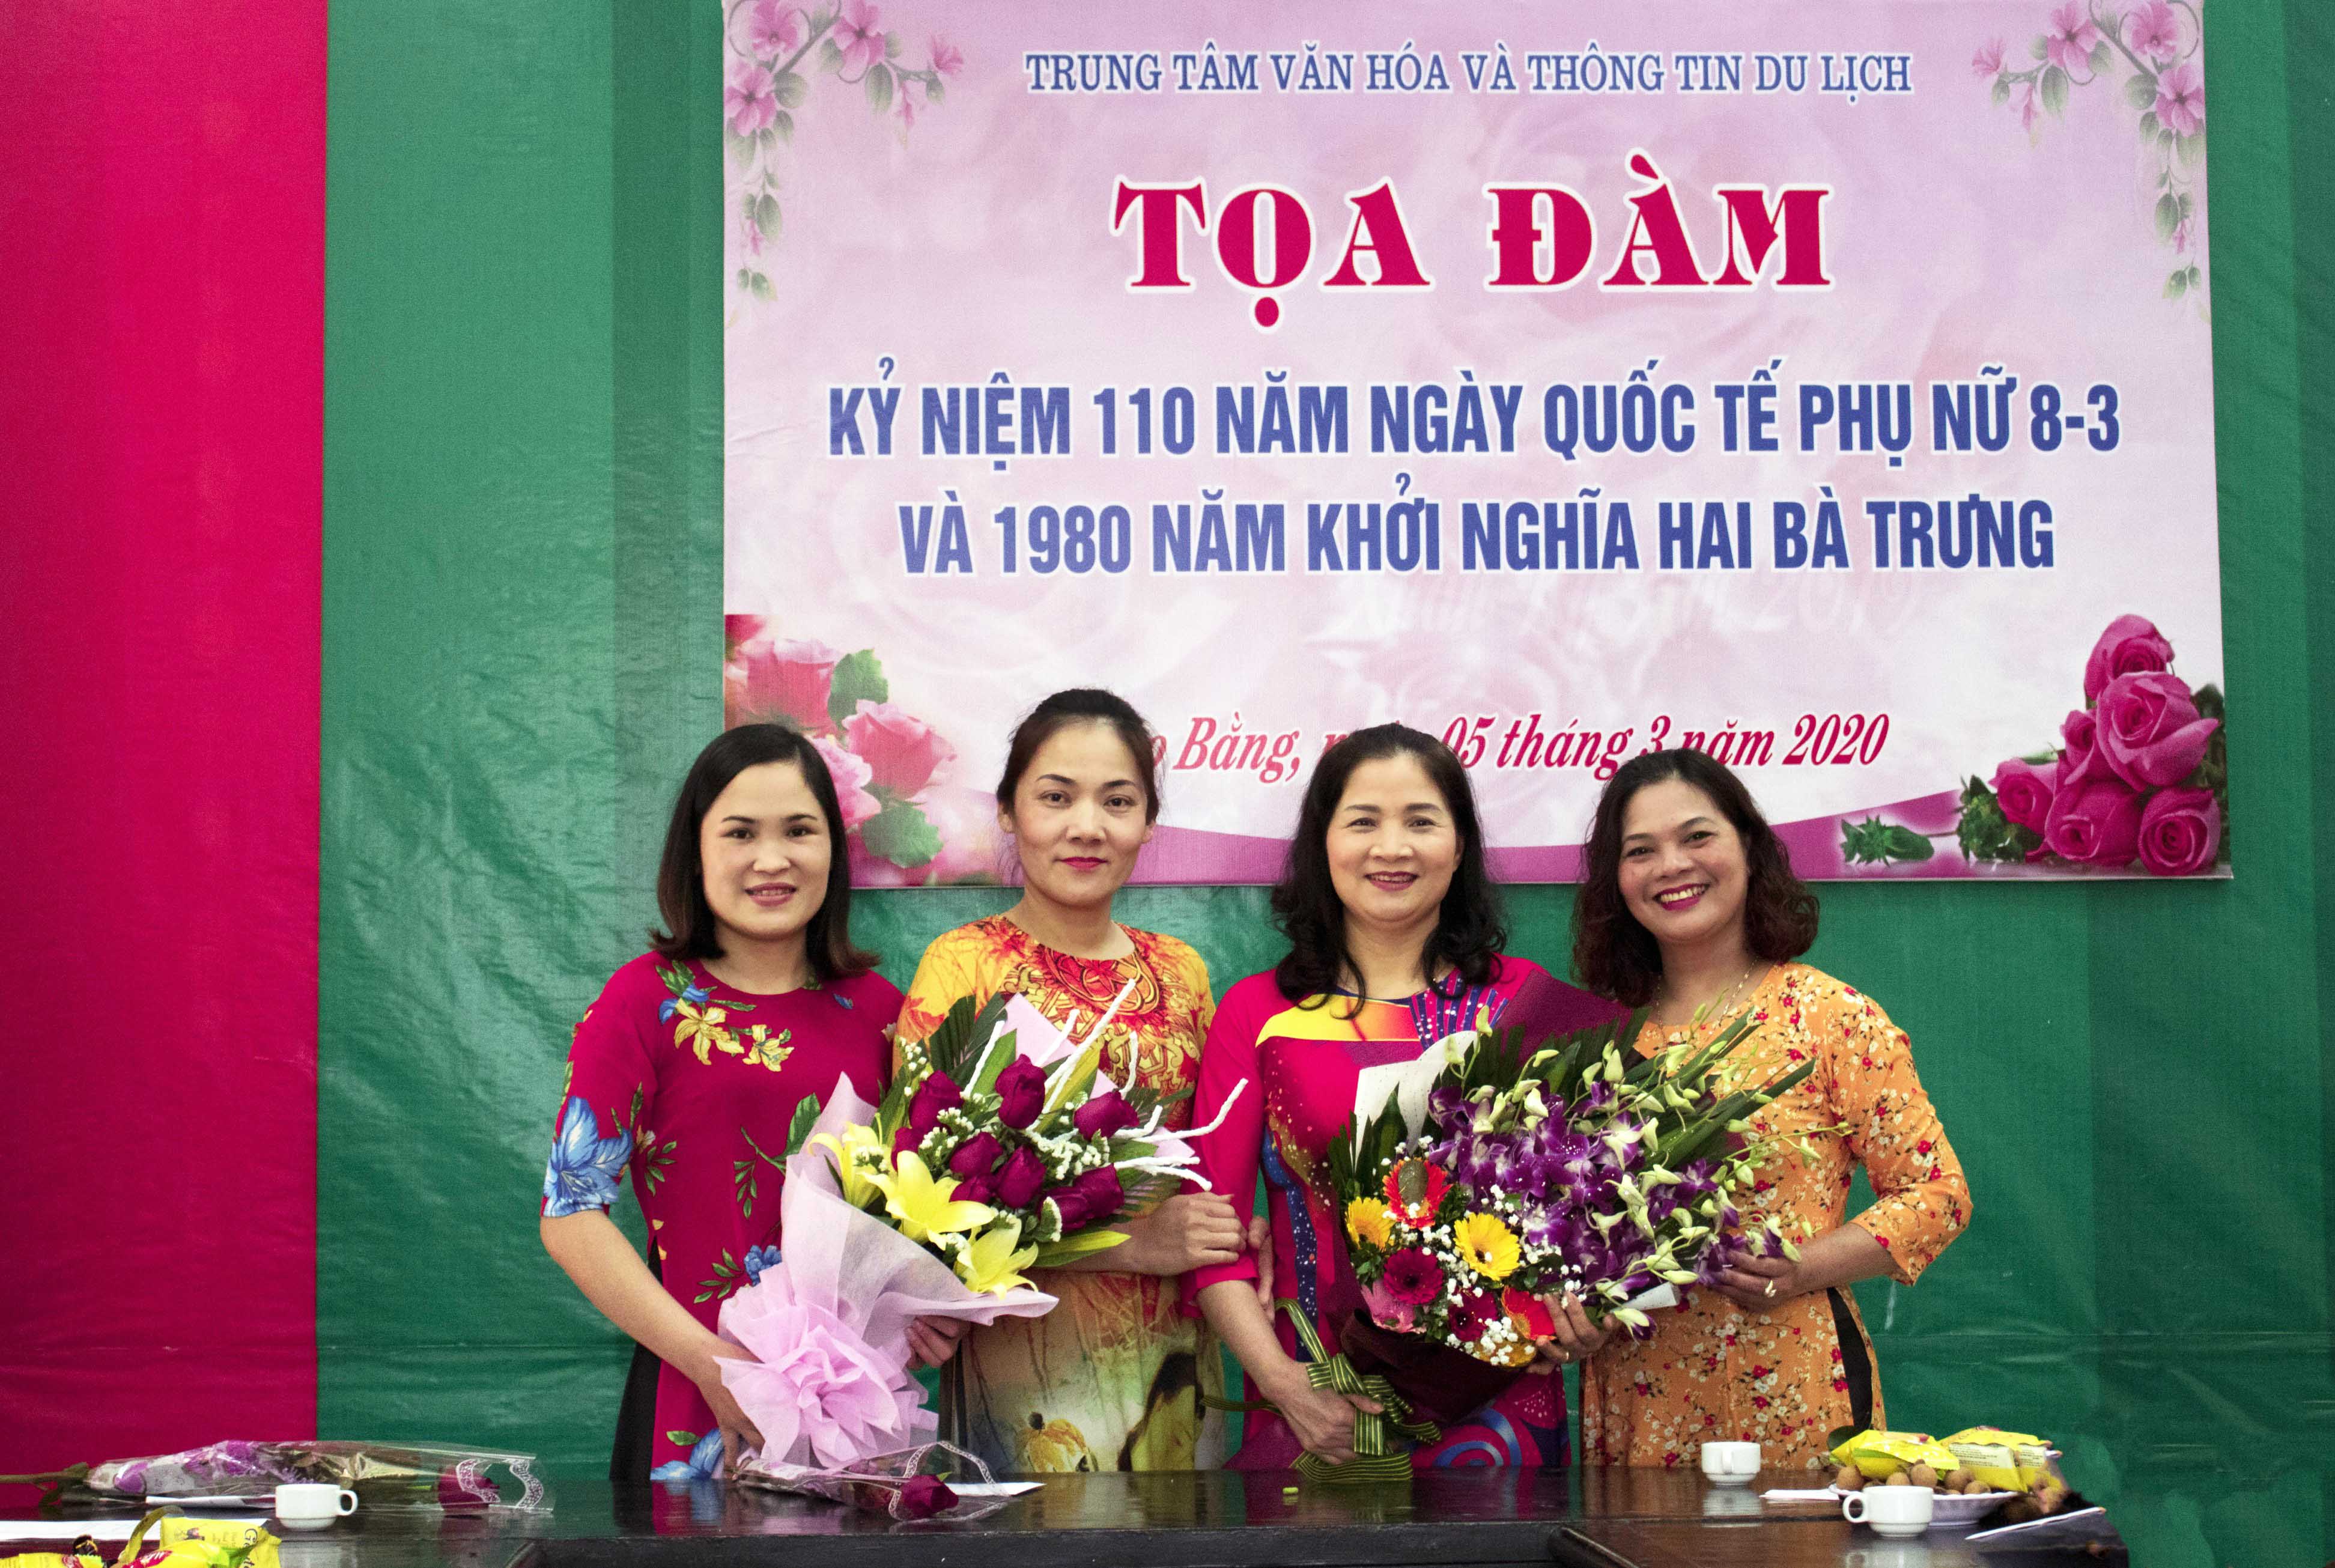 Phụ nữ Trung tâm Văn hóa và Thông tin du lịch Cao Bằng hưởng ứng  sự kiện “Áo dài - Di sản văn hóa Việt Nam”